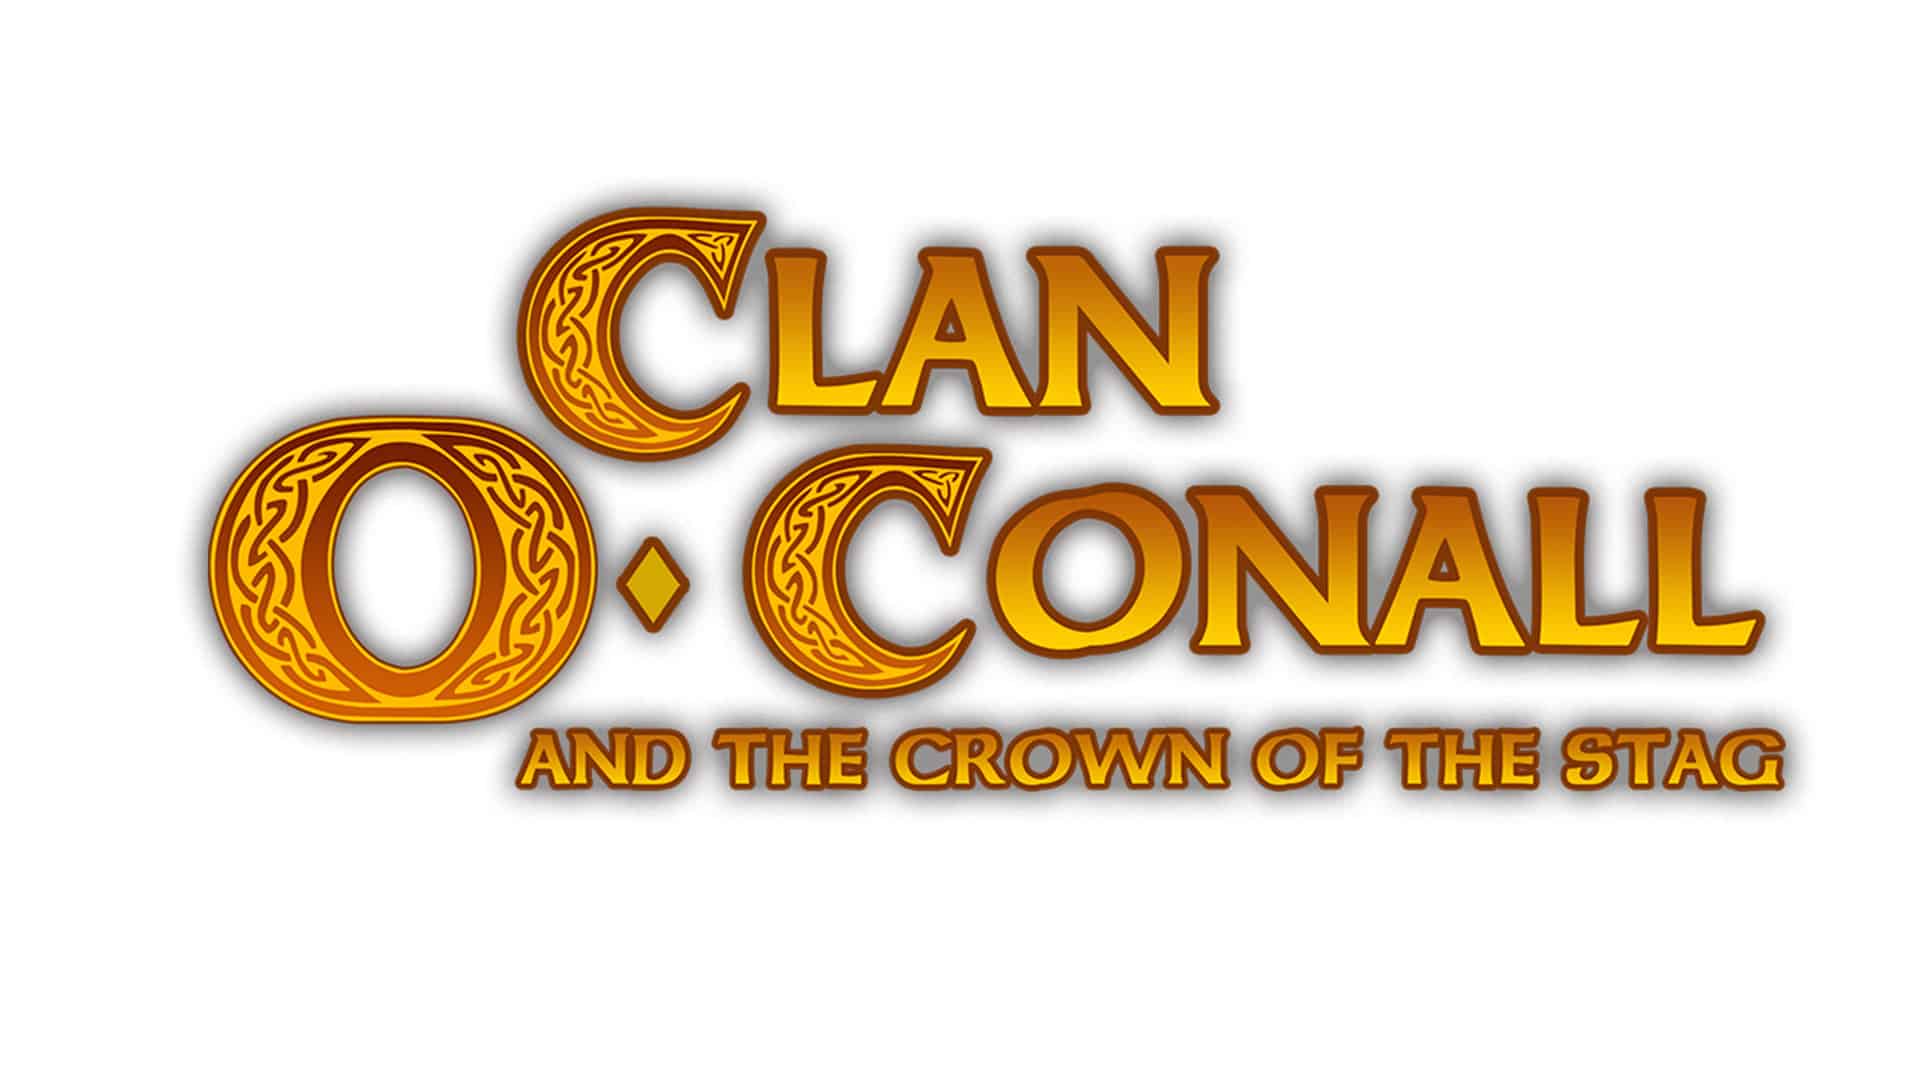 Clan O'Conall